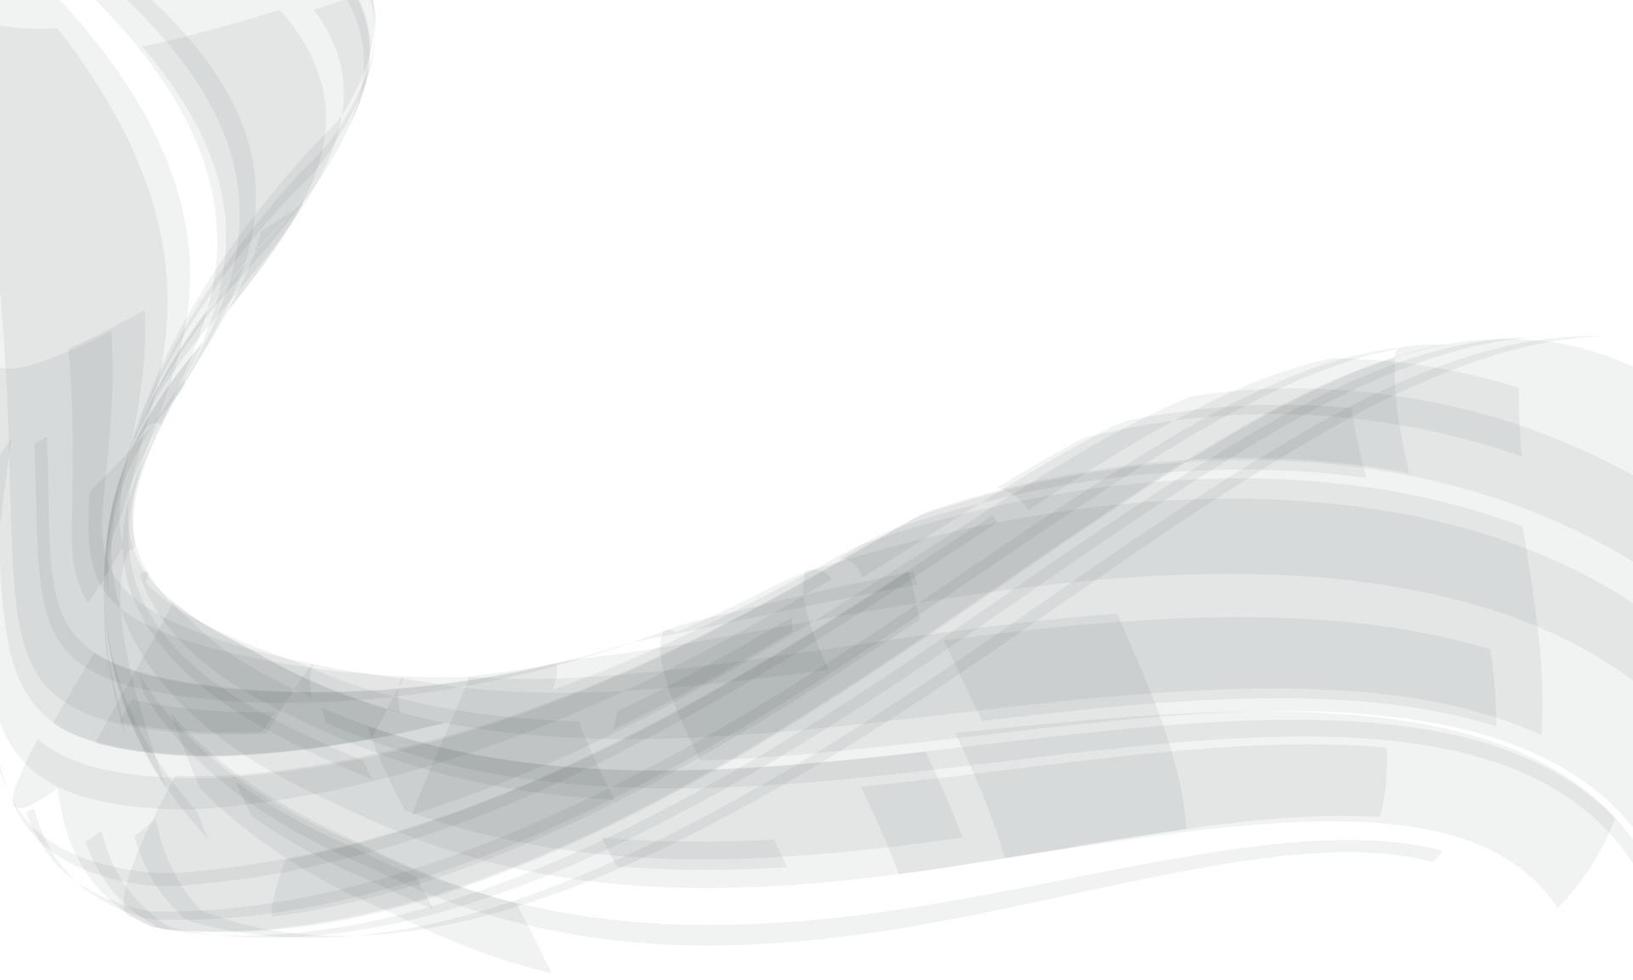 flusso grigio astratto della curva dell'onda su geometrico bianco con l'illustrazione futuristica moderna di vettore del fondo di tecnologia di progettazione dello spazio vuoto